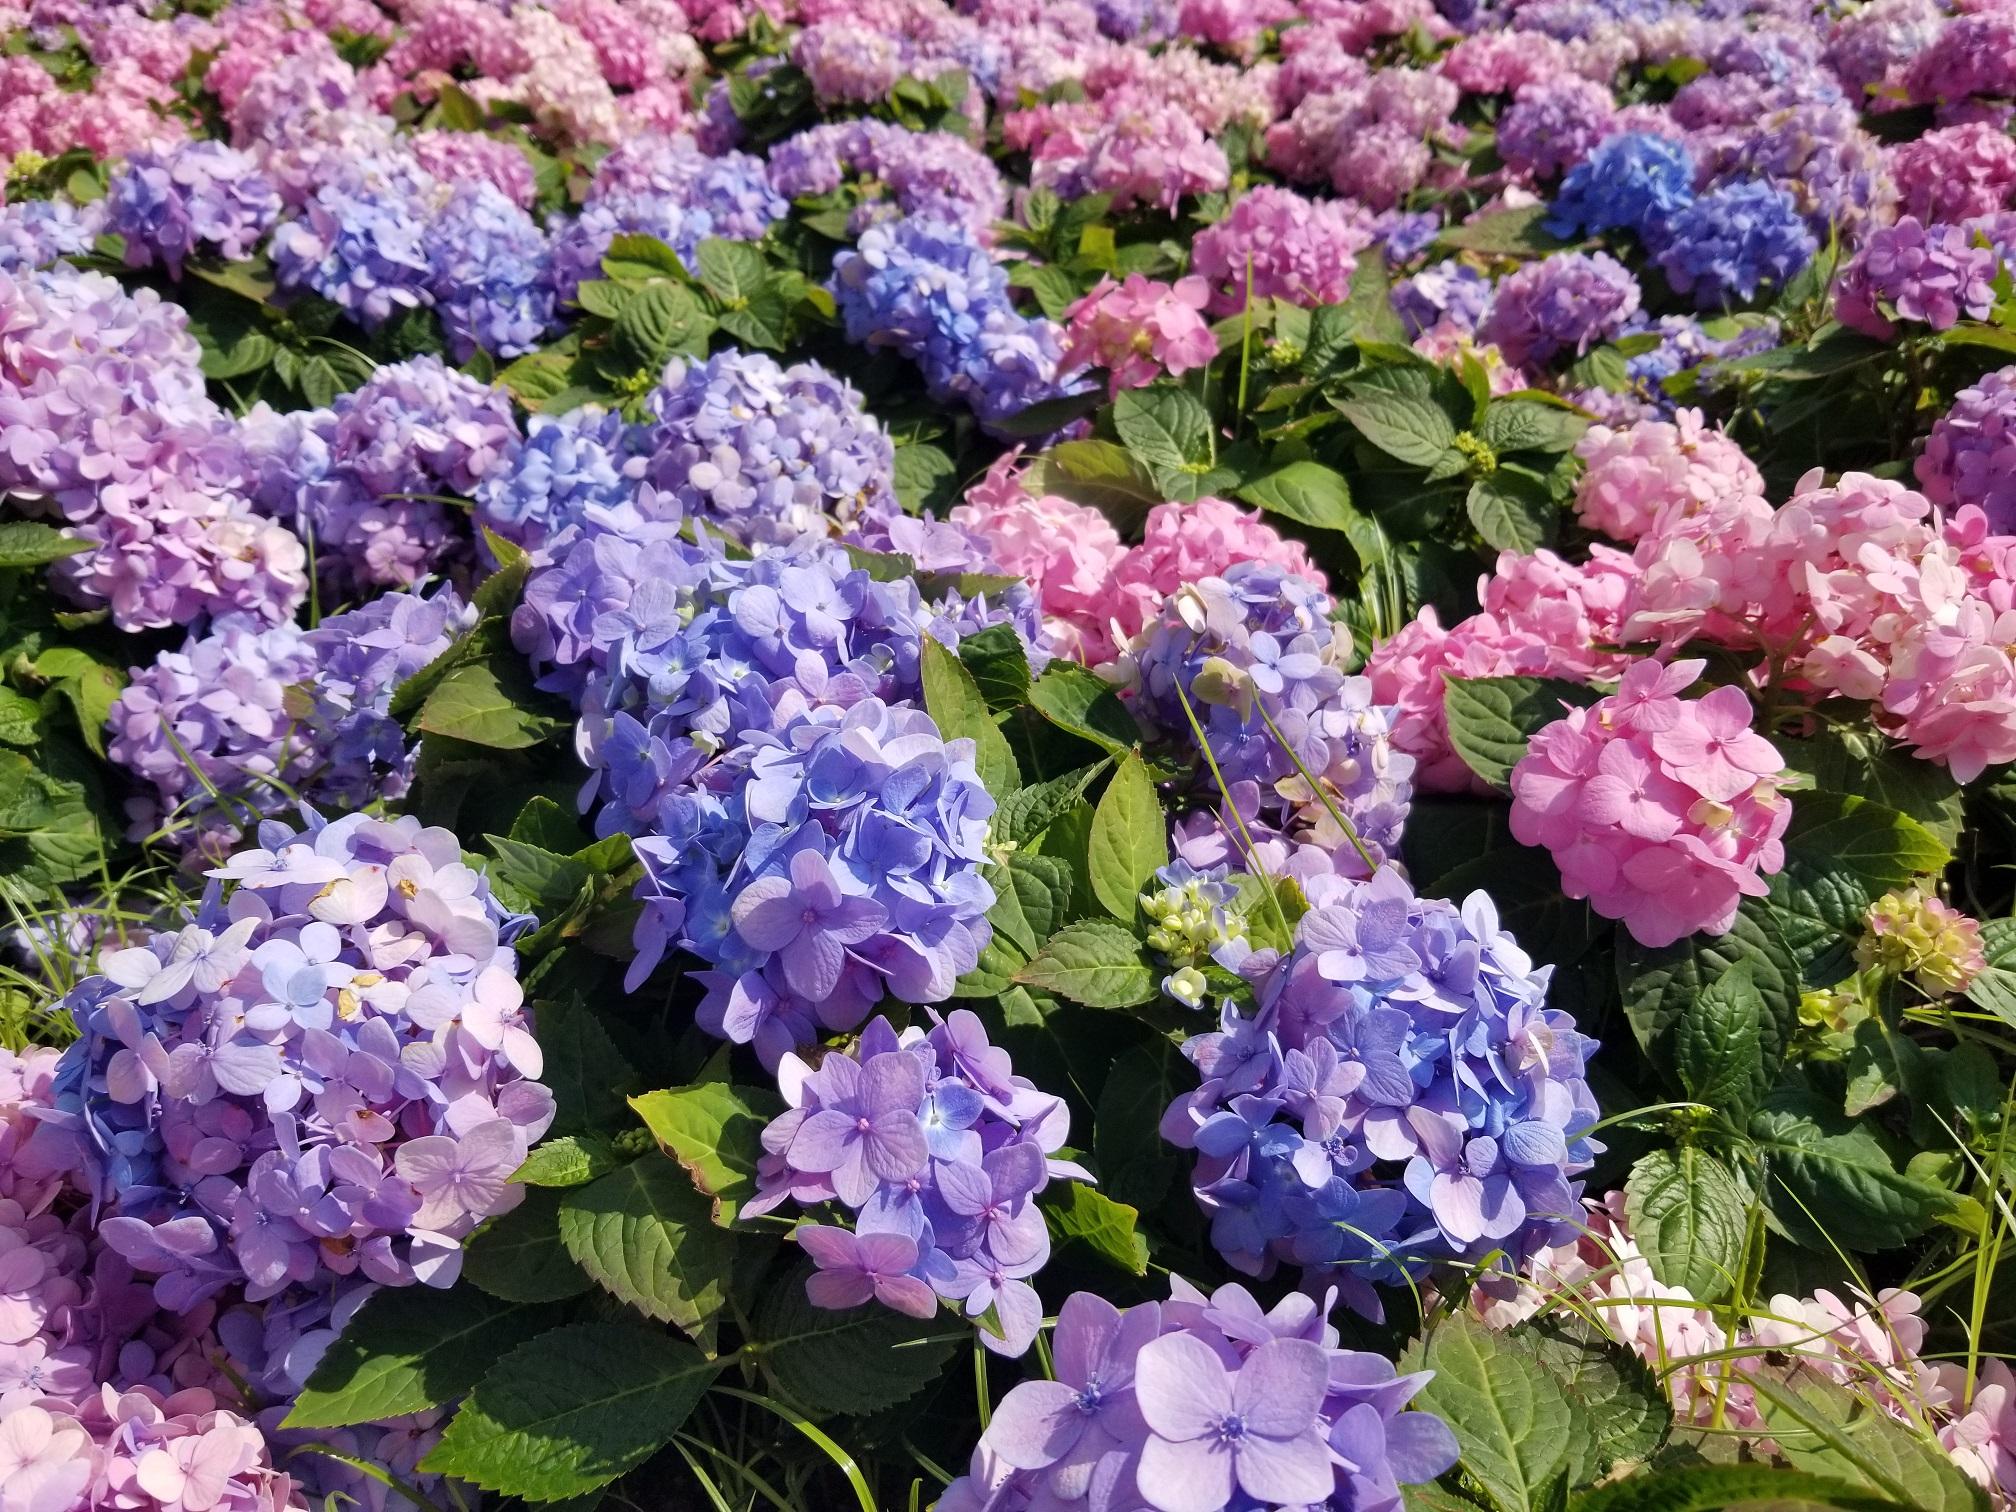 香港花卉展览三月十日至十九日在维多利亚公园举行，以花形娇美独特的绣球花为主题花。绣球花硕大亮丽，适合在庭院和花坛广泛栽种，亦可以盆栽种植。

